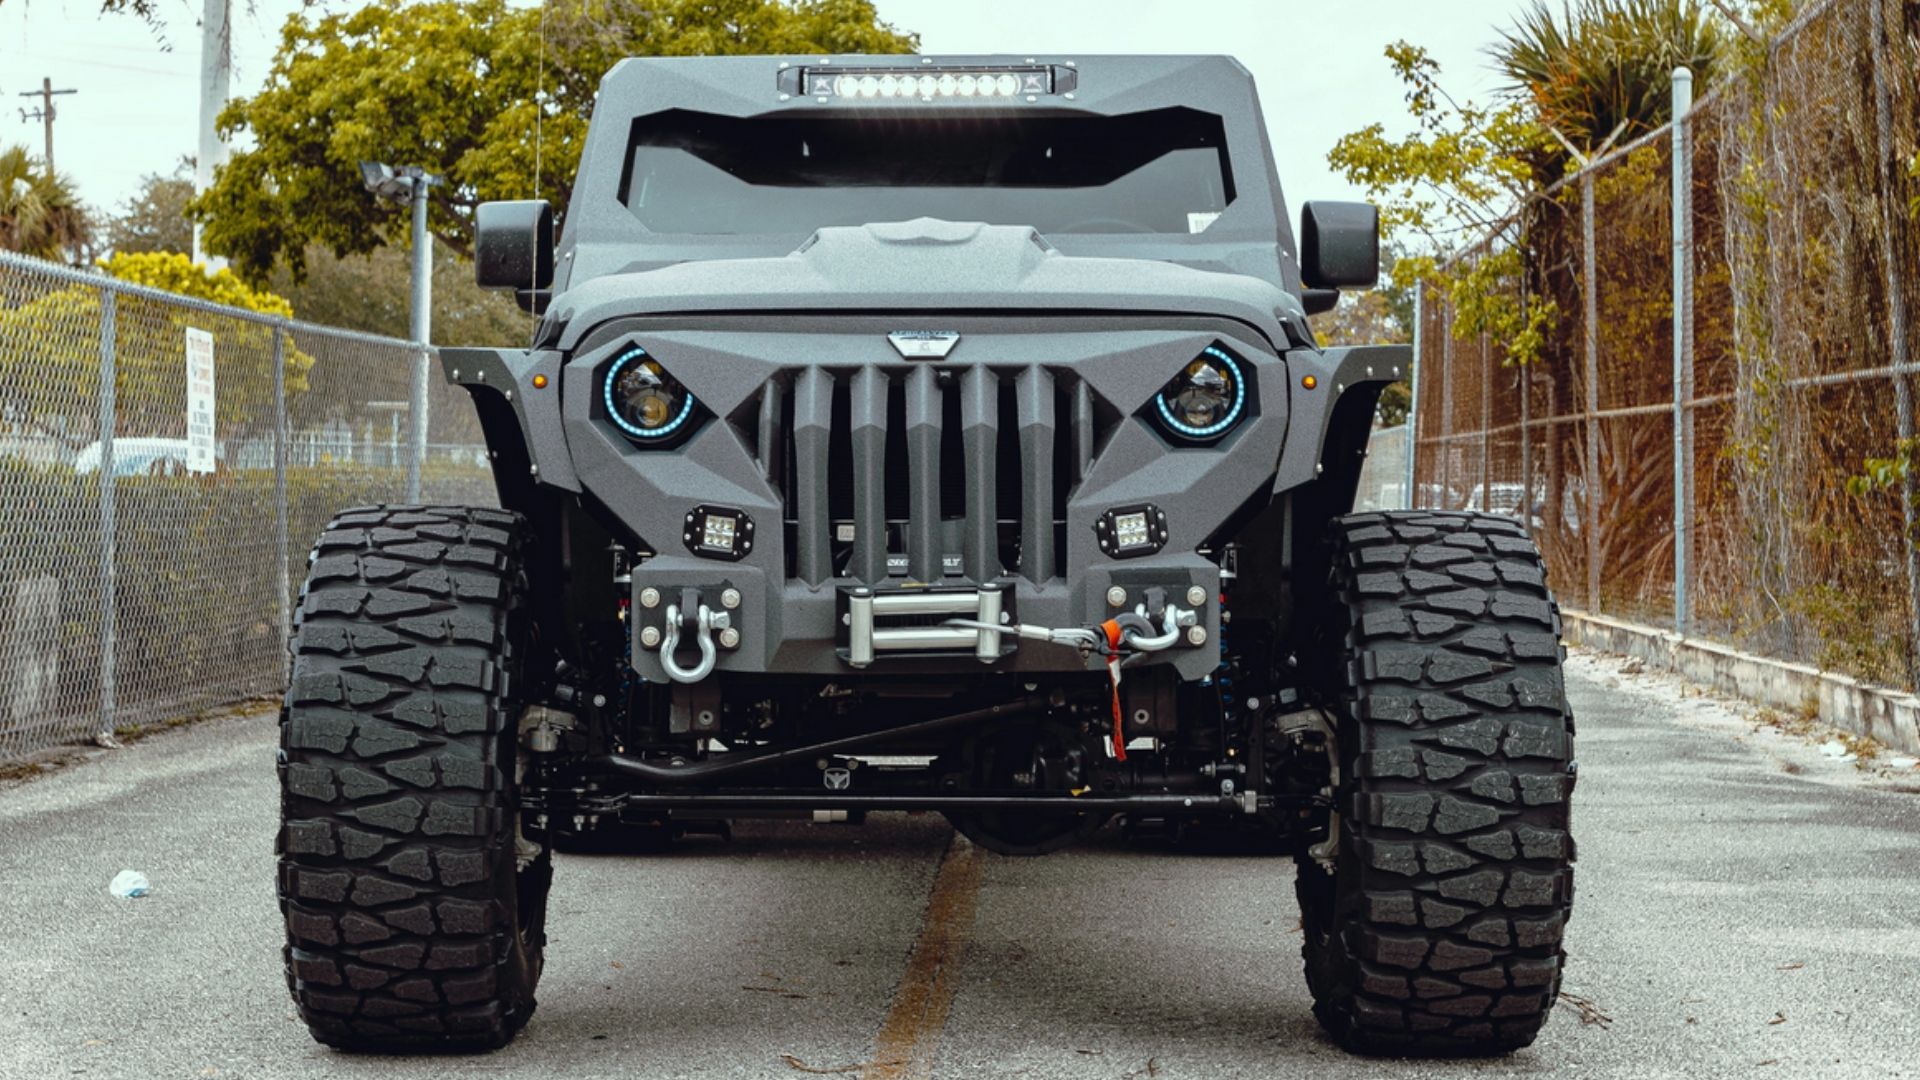 RÉCORD México - NUEVO EN SU COLECCIÓN 🚙 Este es un Hellfire Apocalypse  6x6, cuesta más de 200 mil dólares y es el nuevo vehículo personalizado de Luka  Doncic. Es un Jeep